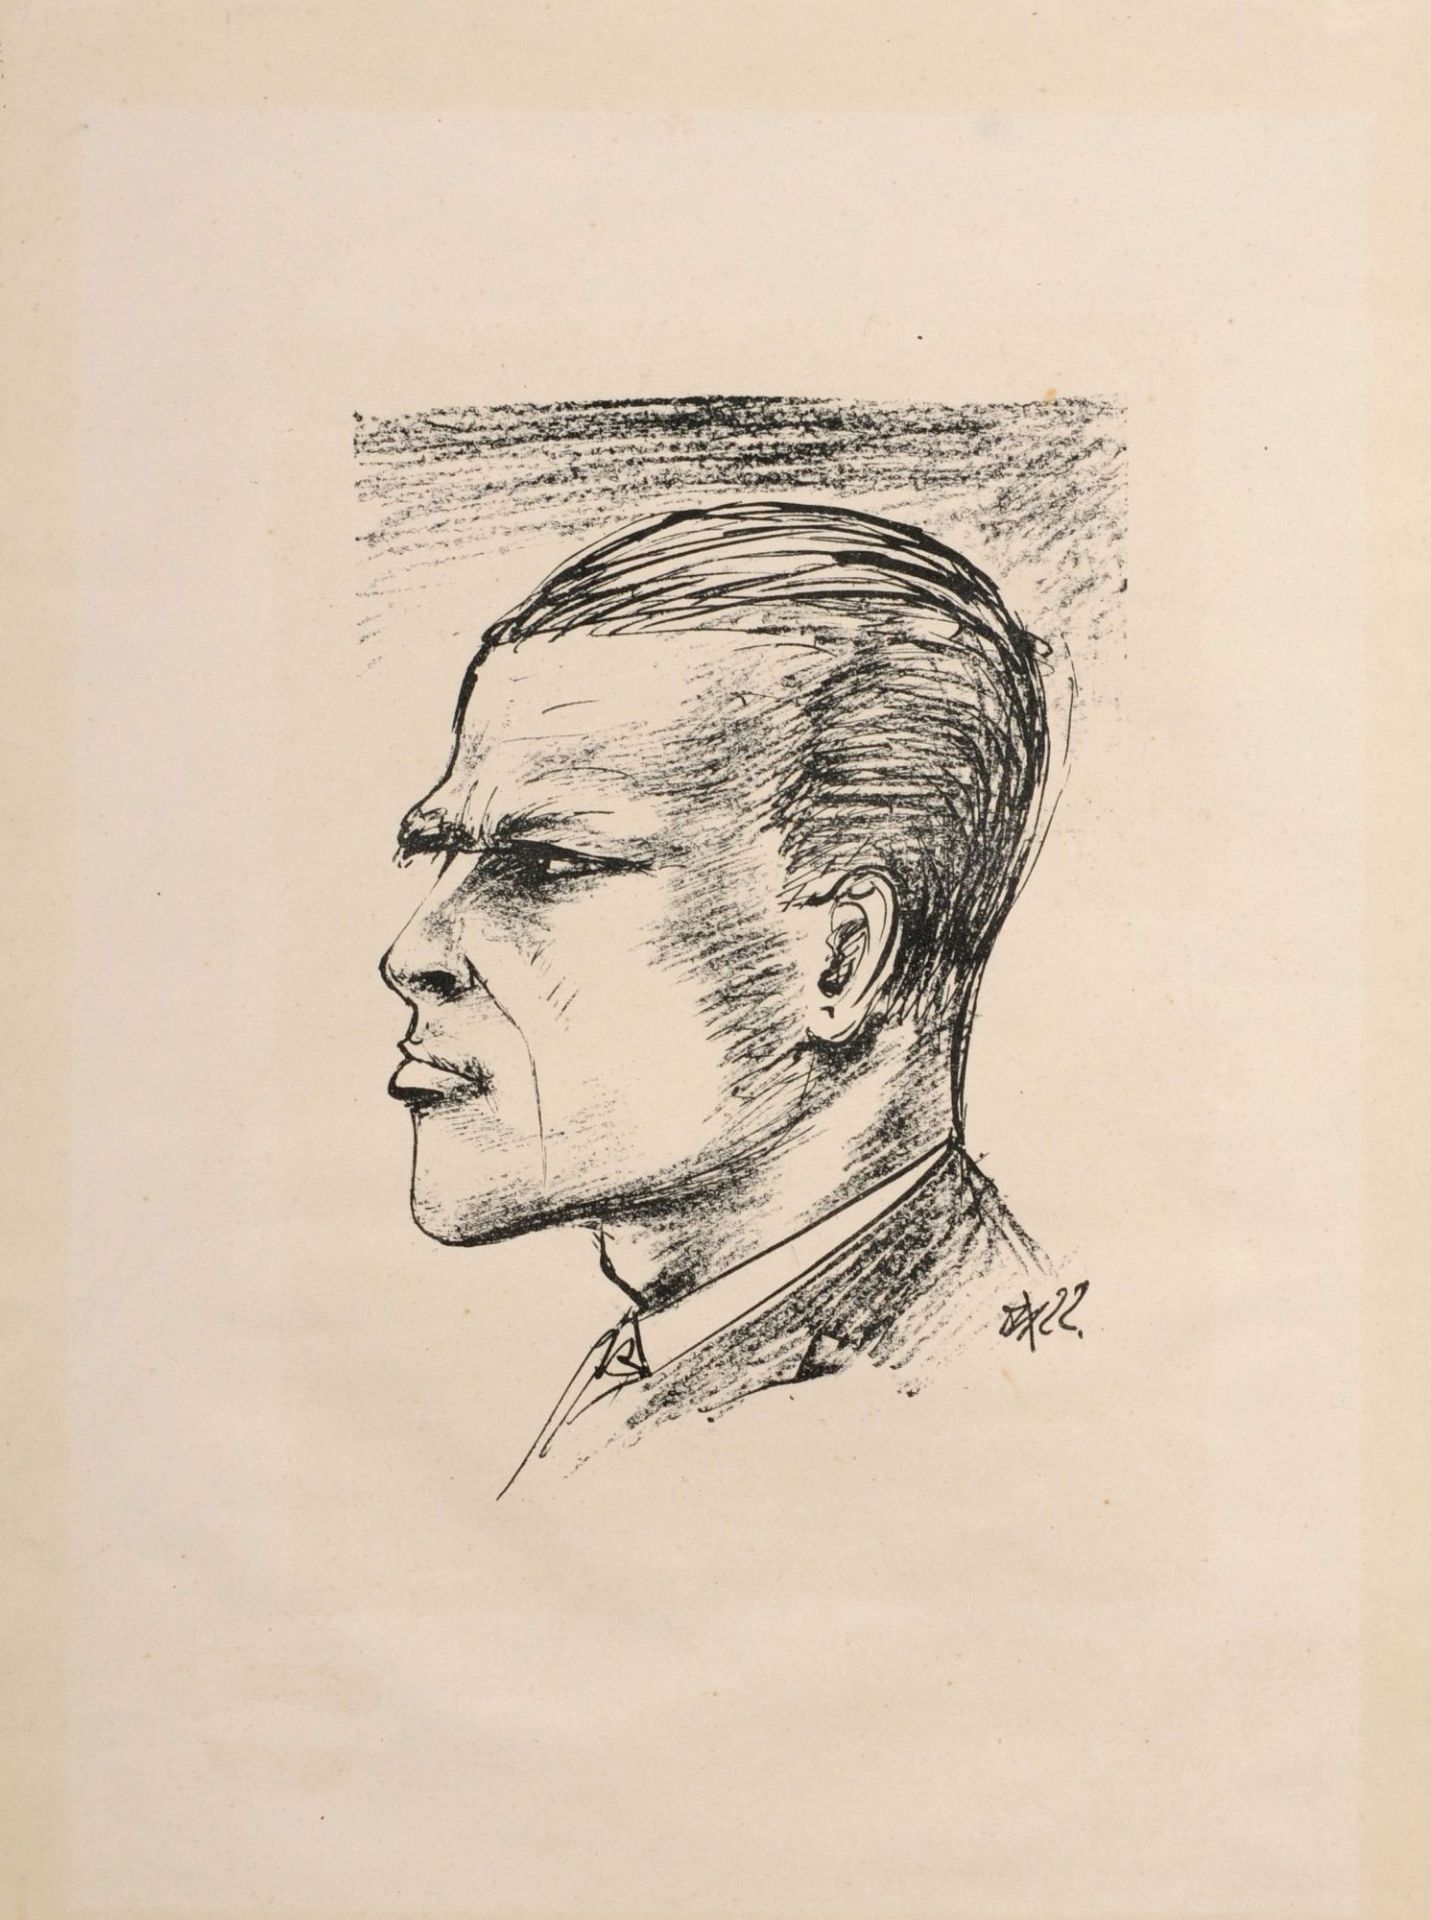 Otto Dix "Selbstportrait im Profil". 1922.